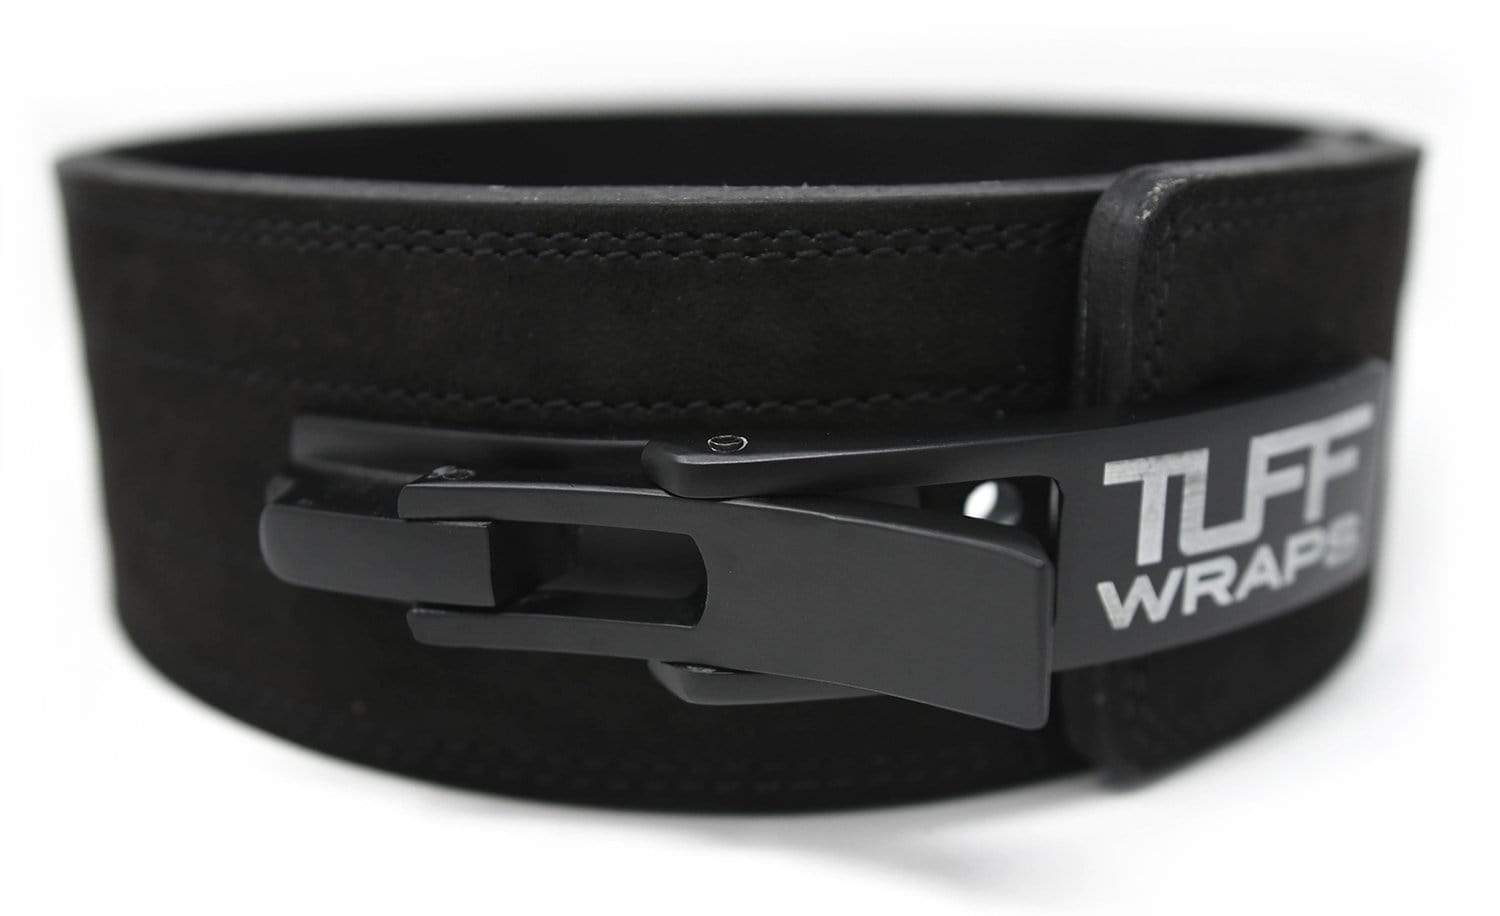 Powerlifting Belts by TuffWraps®